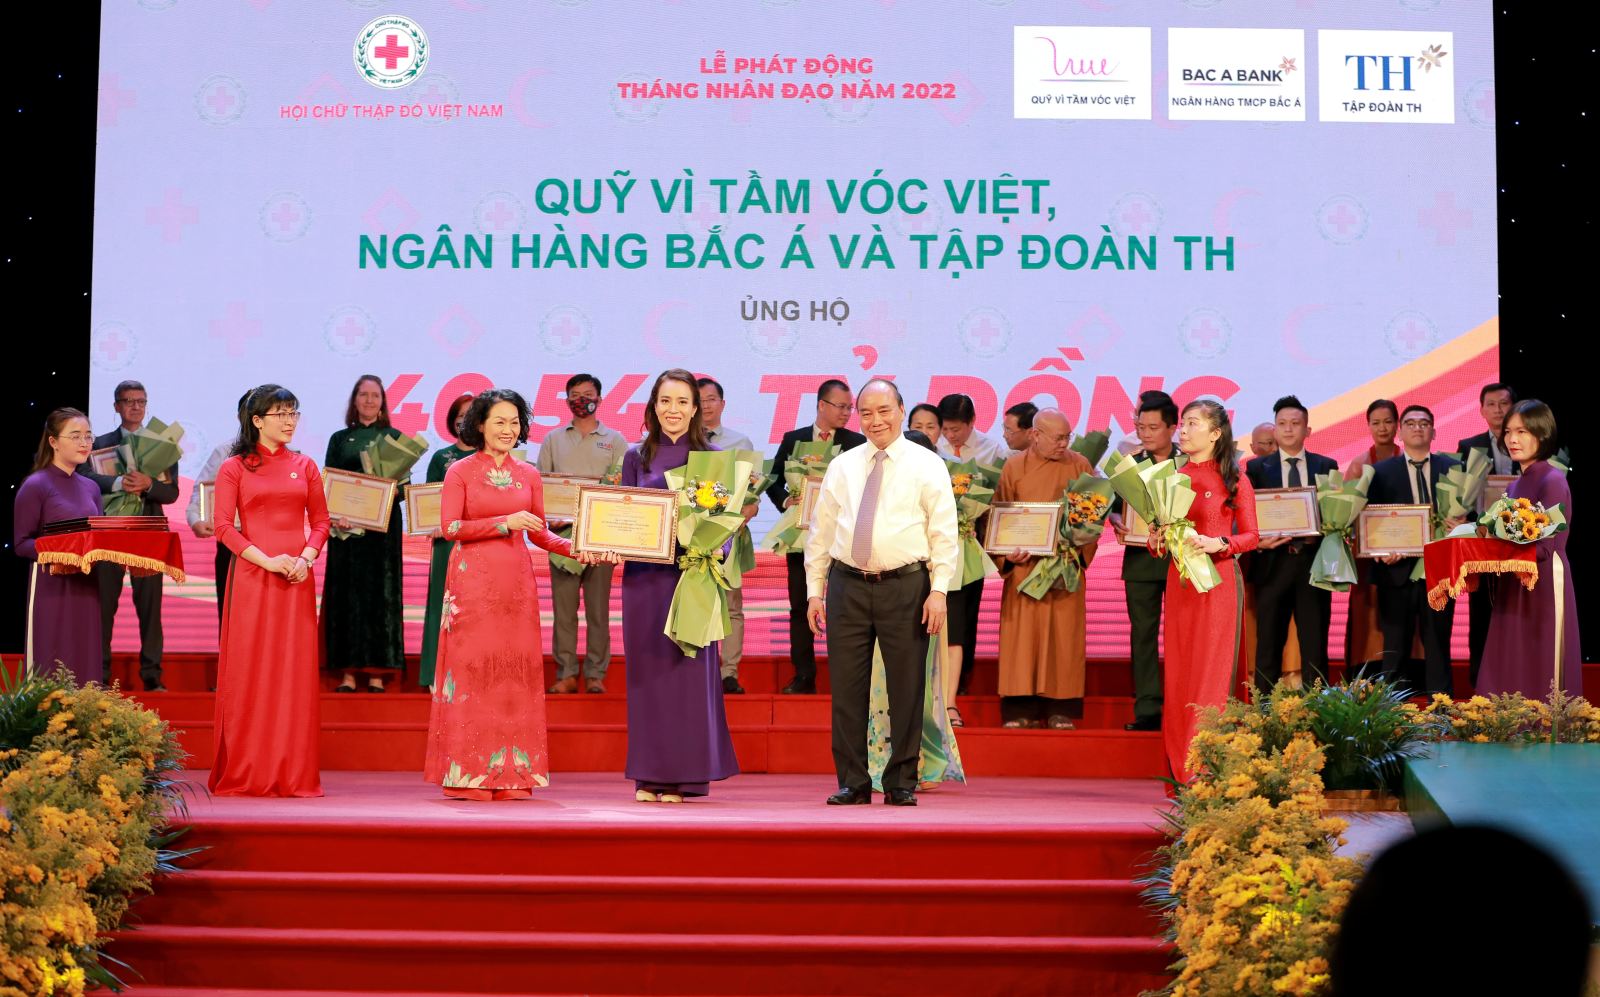 Quỹ Vì Tầm Vóc Việt, Tập đoàn TH và Ngân hàng TMCP Bắc Á ủng hộ 40 tỷ 540 triệu đồng trong Lễ phát động Tháng Nhân đạo 2022